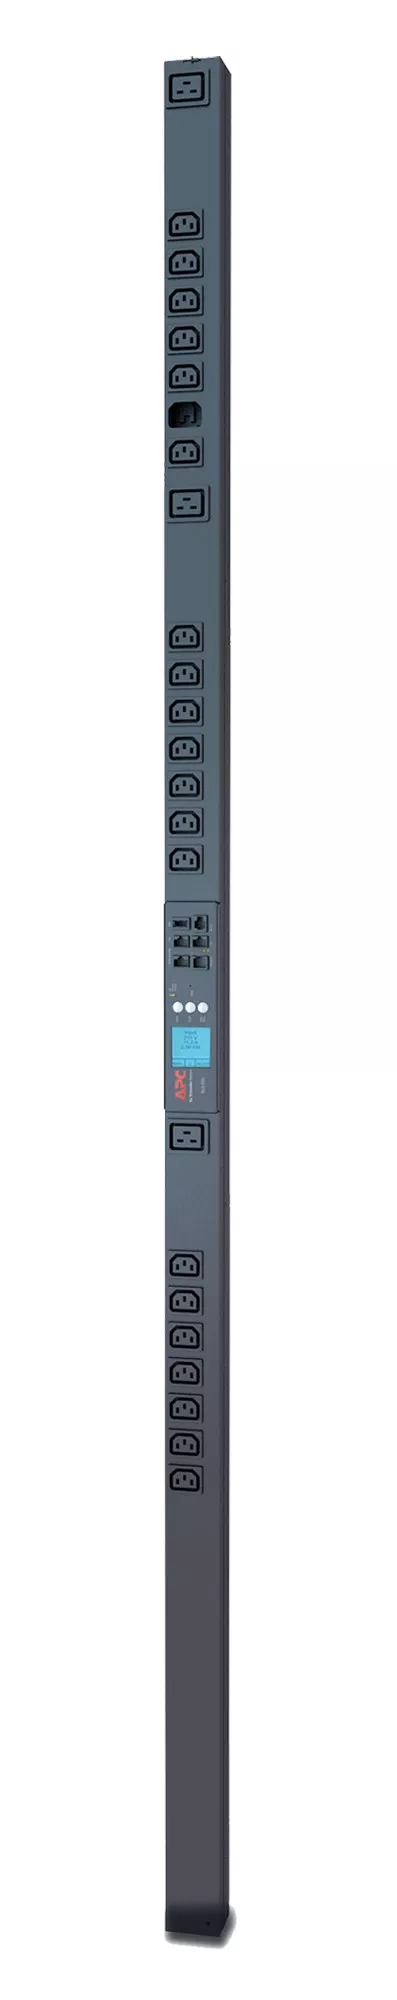 Vente APC Rack PDU 2G Metered-by-Outlet ZeroU 16A 230V APC au meilleur prix - visuel 2